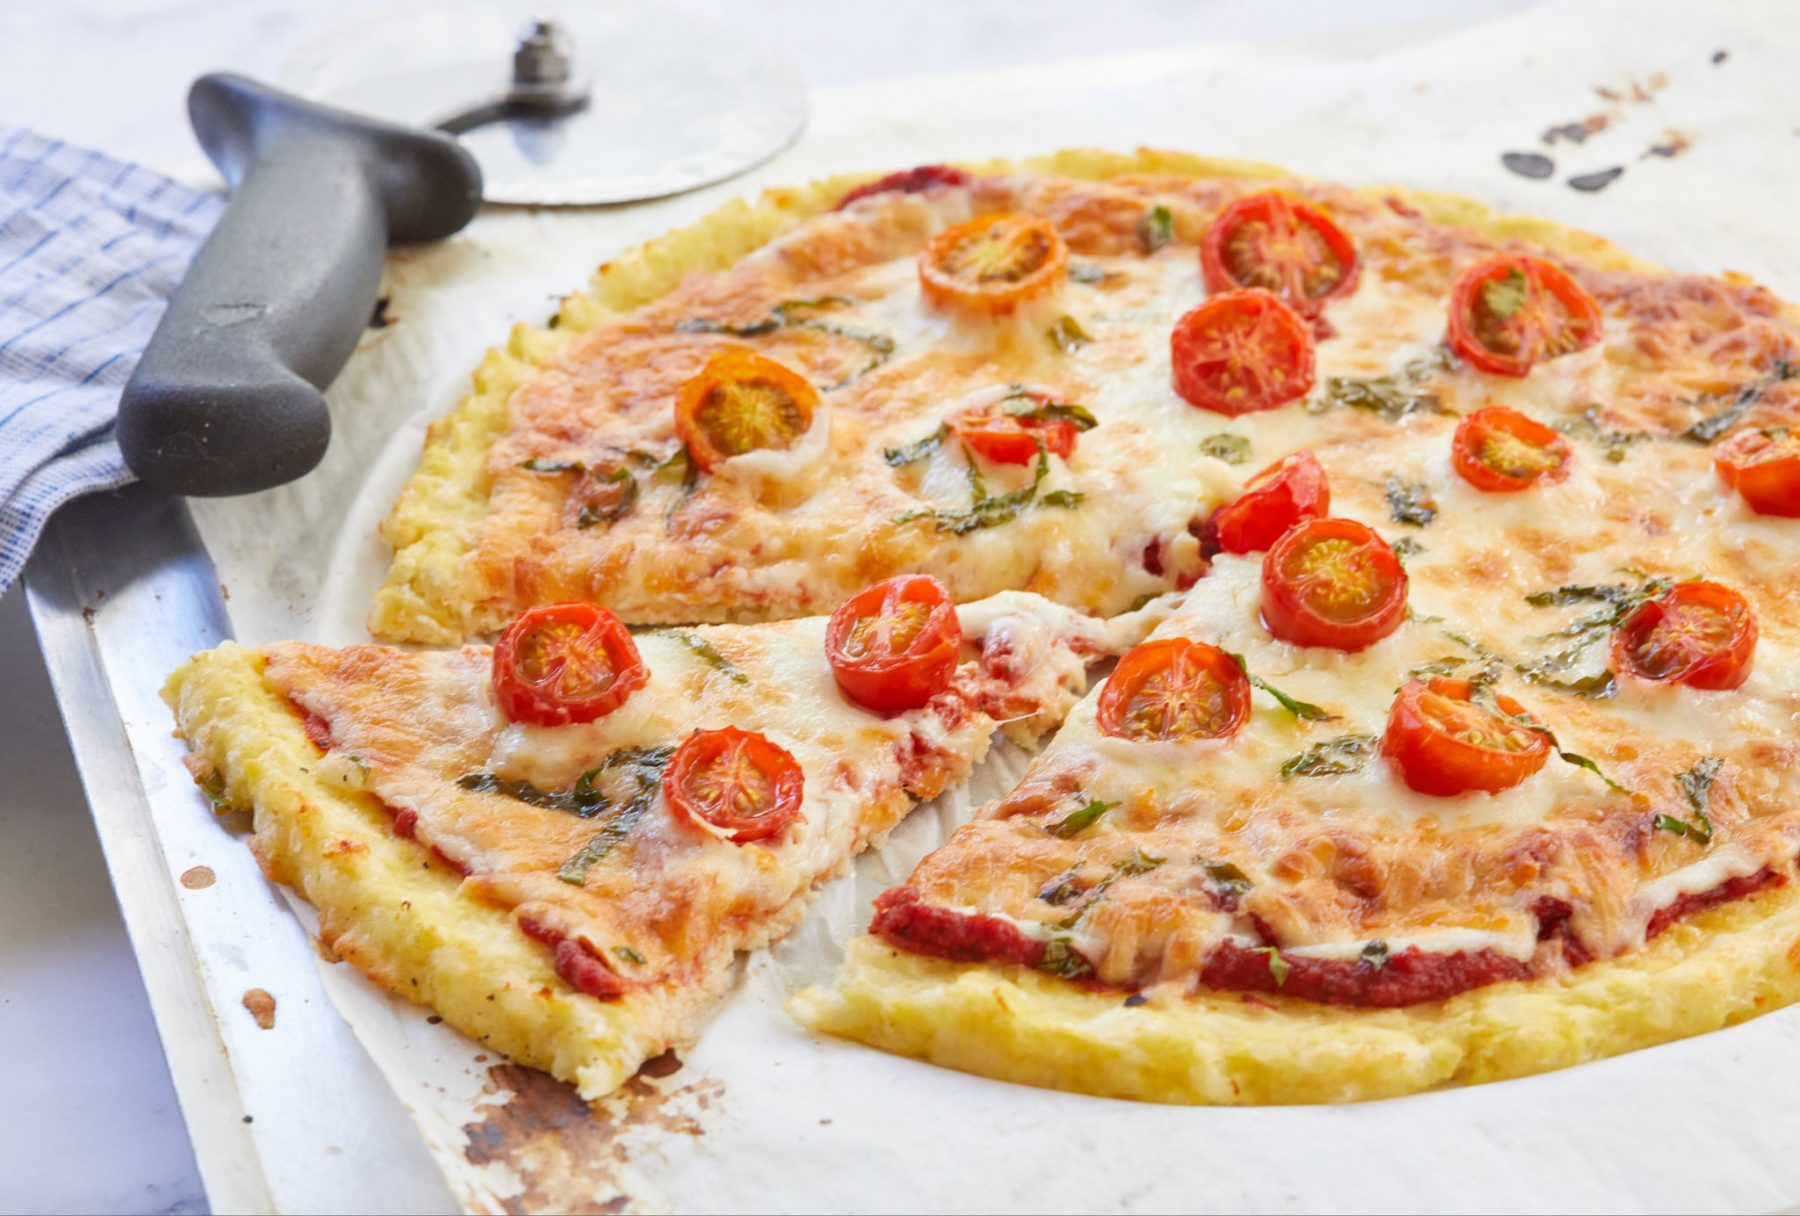 Πίτσα με ζύμη από κουνουπίδι: Δεν έχετε ξαναφάει πιο υγιεινή πρωτεΐνική πίτσα φυτικής προέλευσης